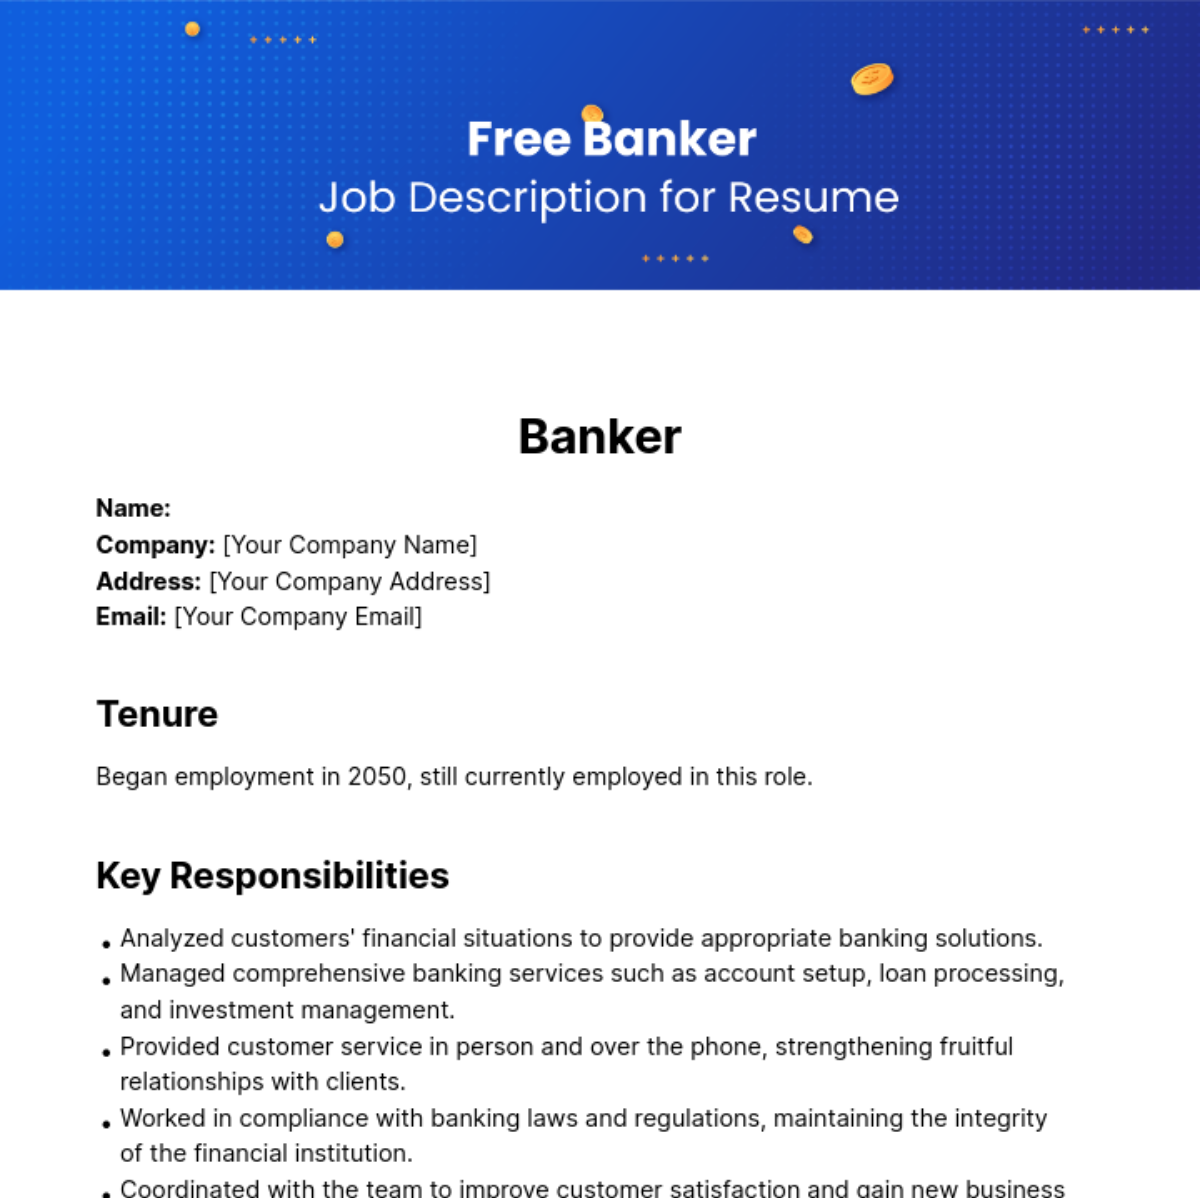 Free Banker Job Description for Resume Template